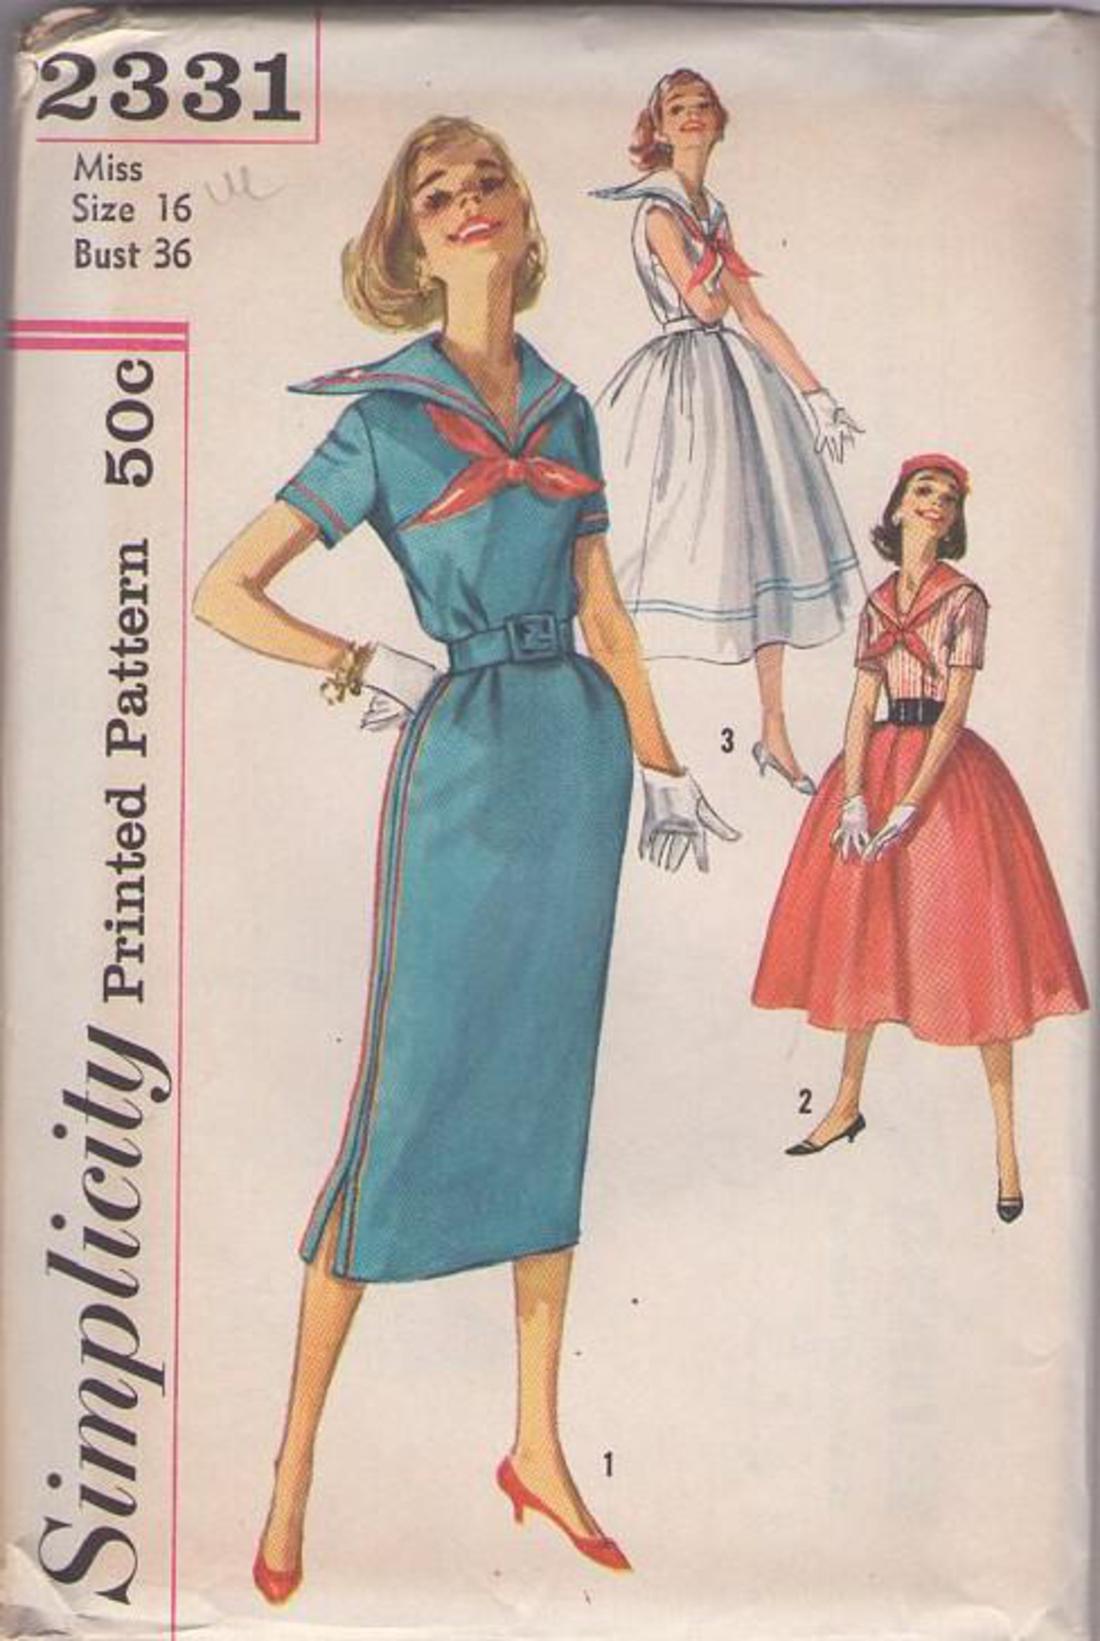 50s sailor dress